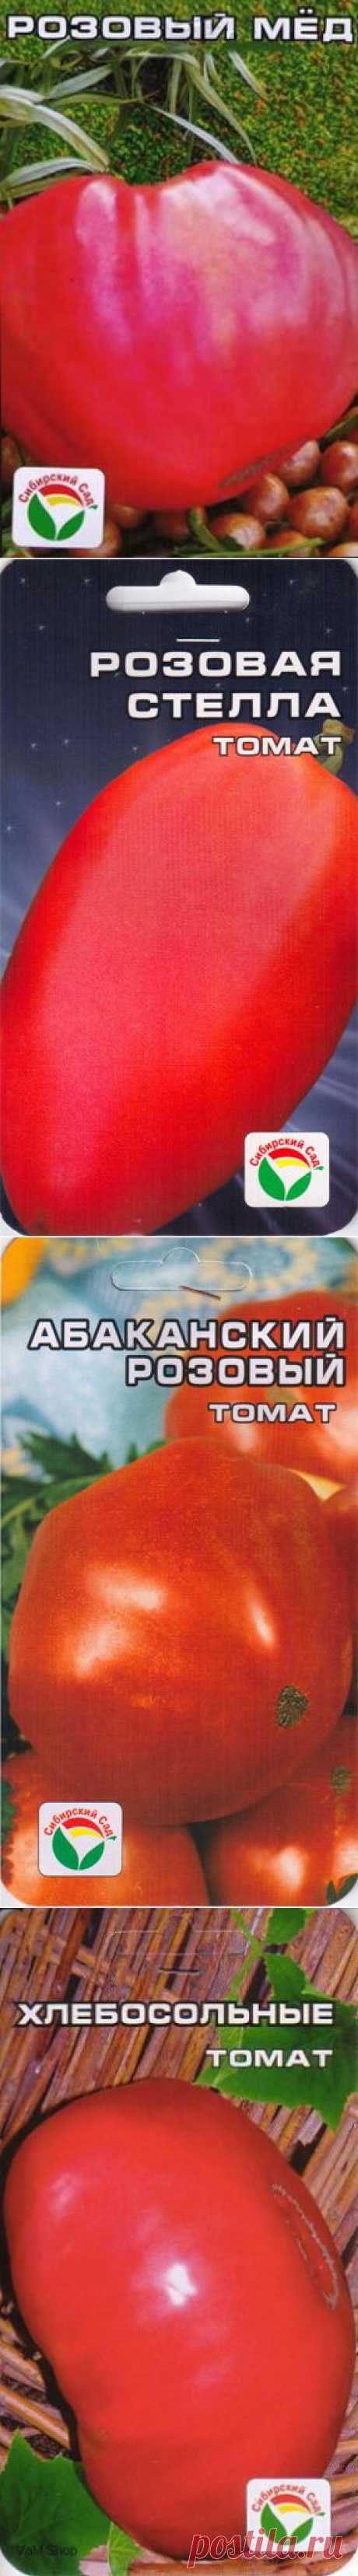 Моя коллекция семян томатов. Только самые вкусные и урожайные! ))